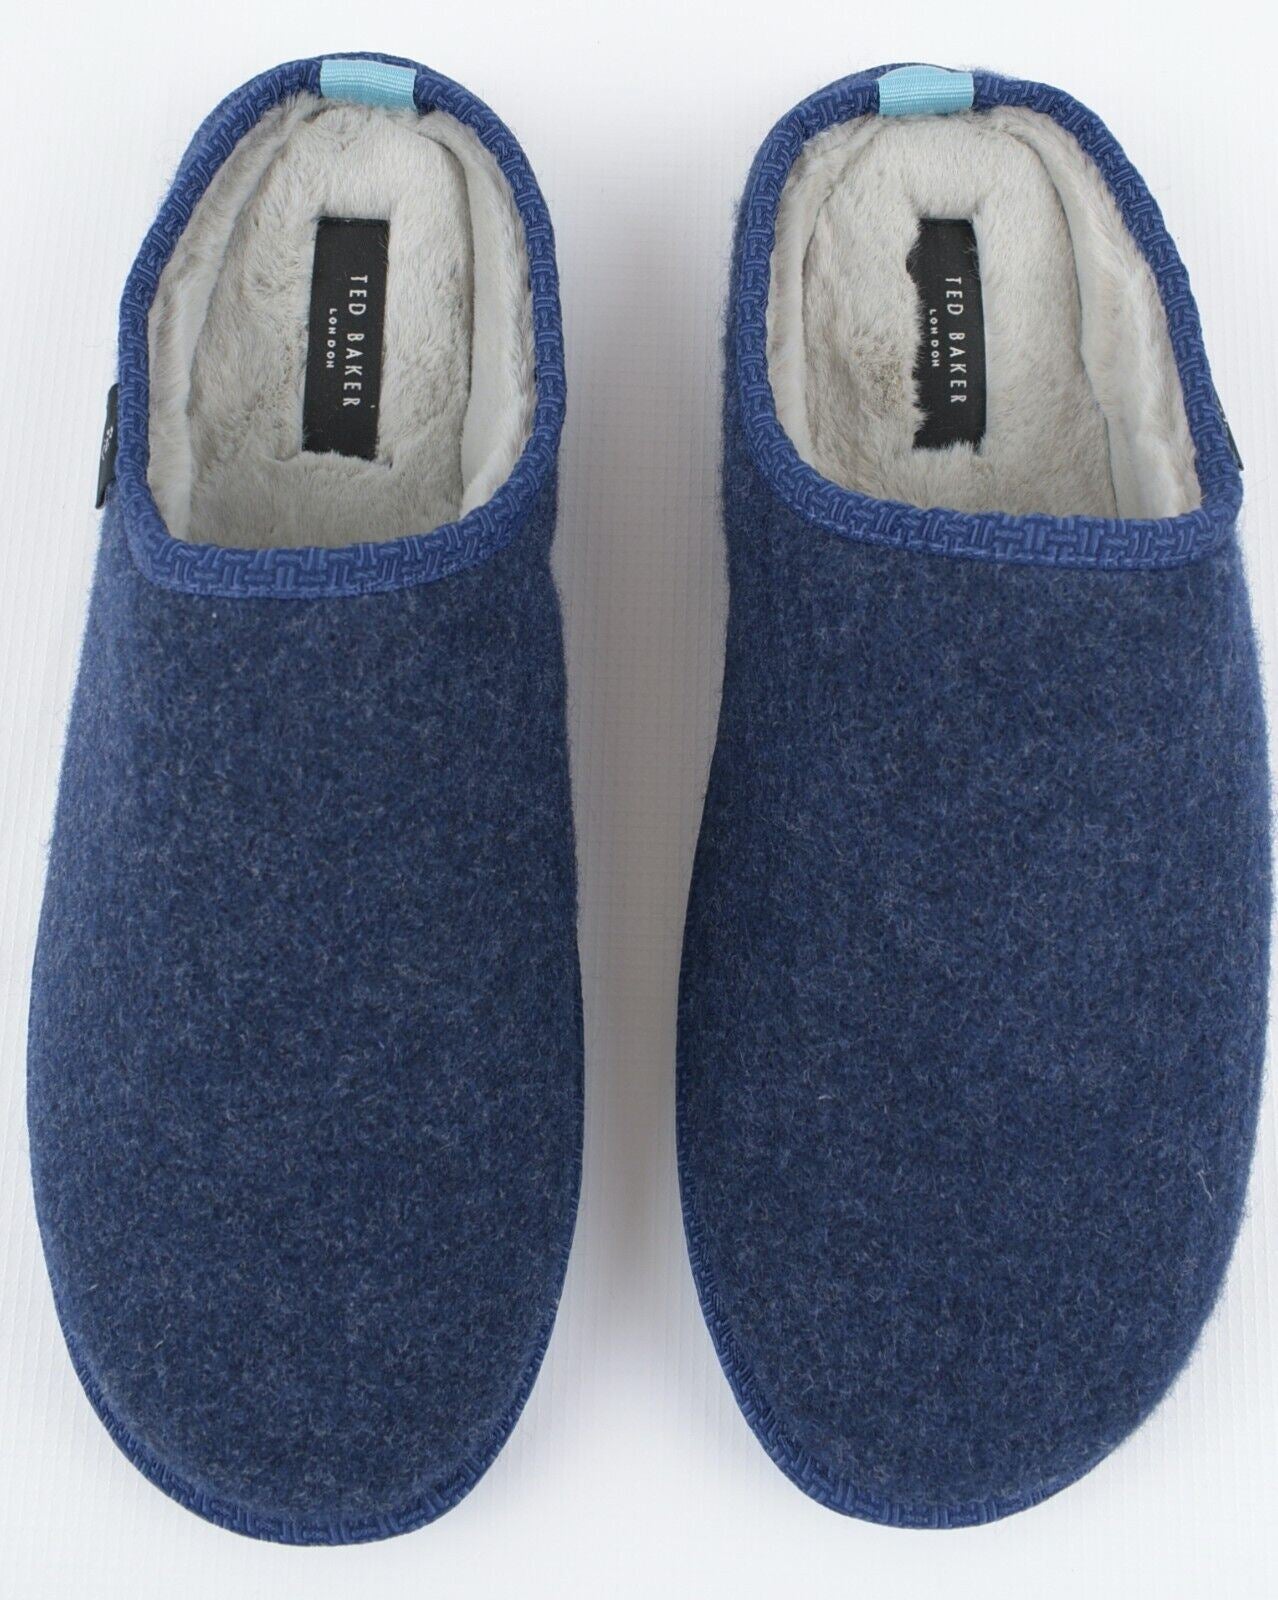 TED BAKER Men's SIMONN Felt Mulet Sole Slippers, Blue, size UK 11 /EU 45